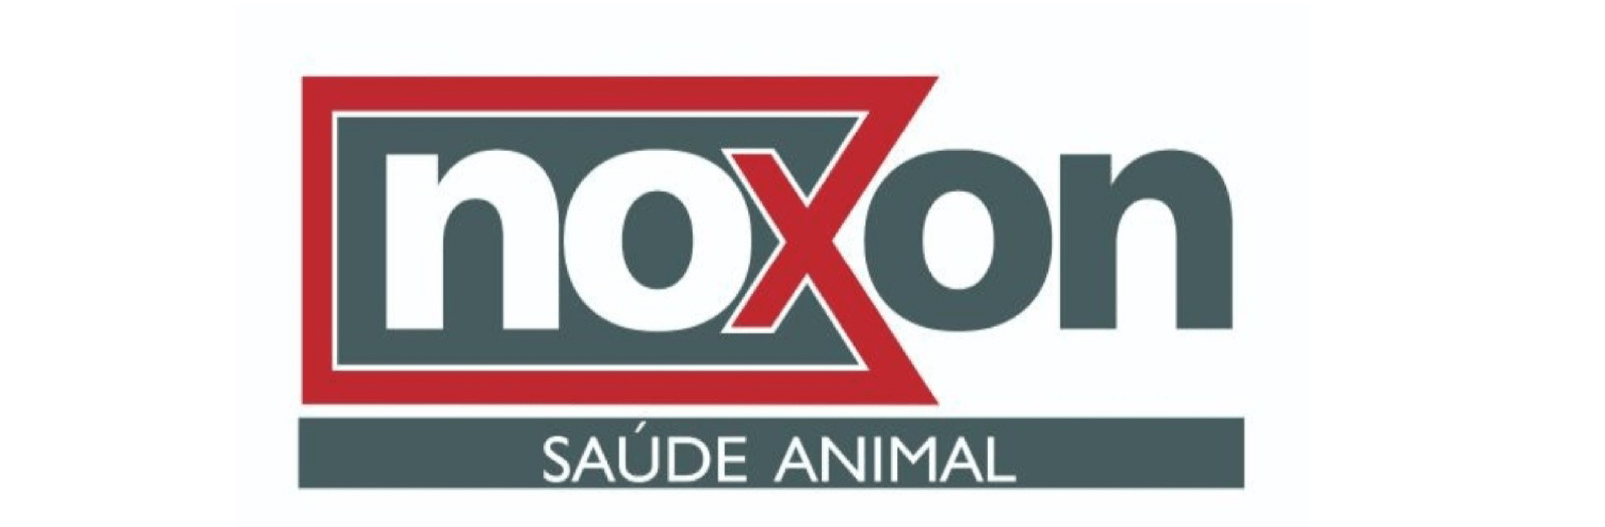 Noxon